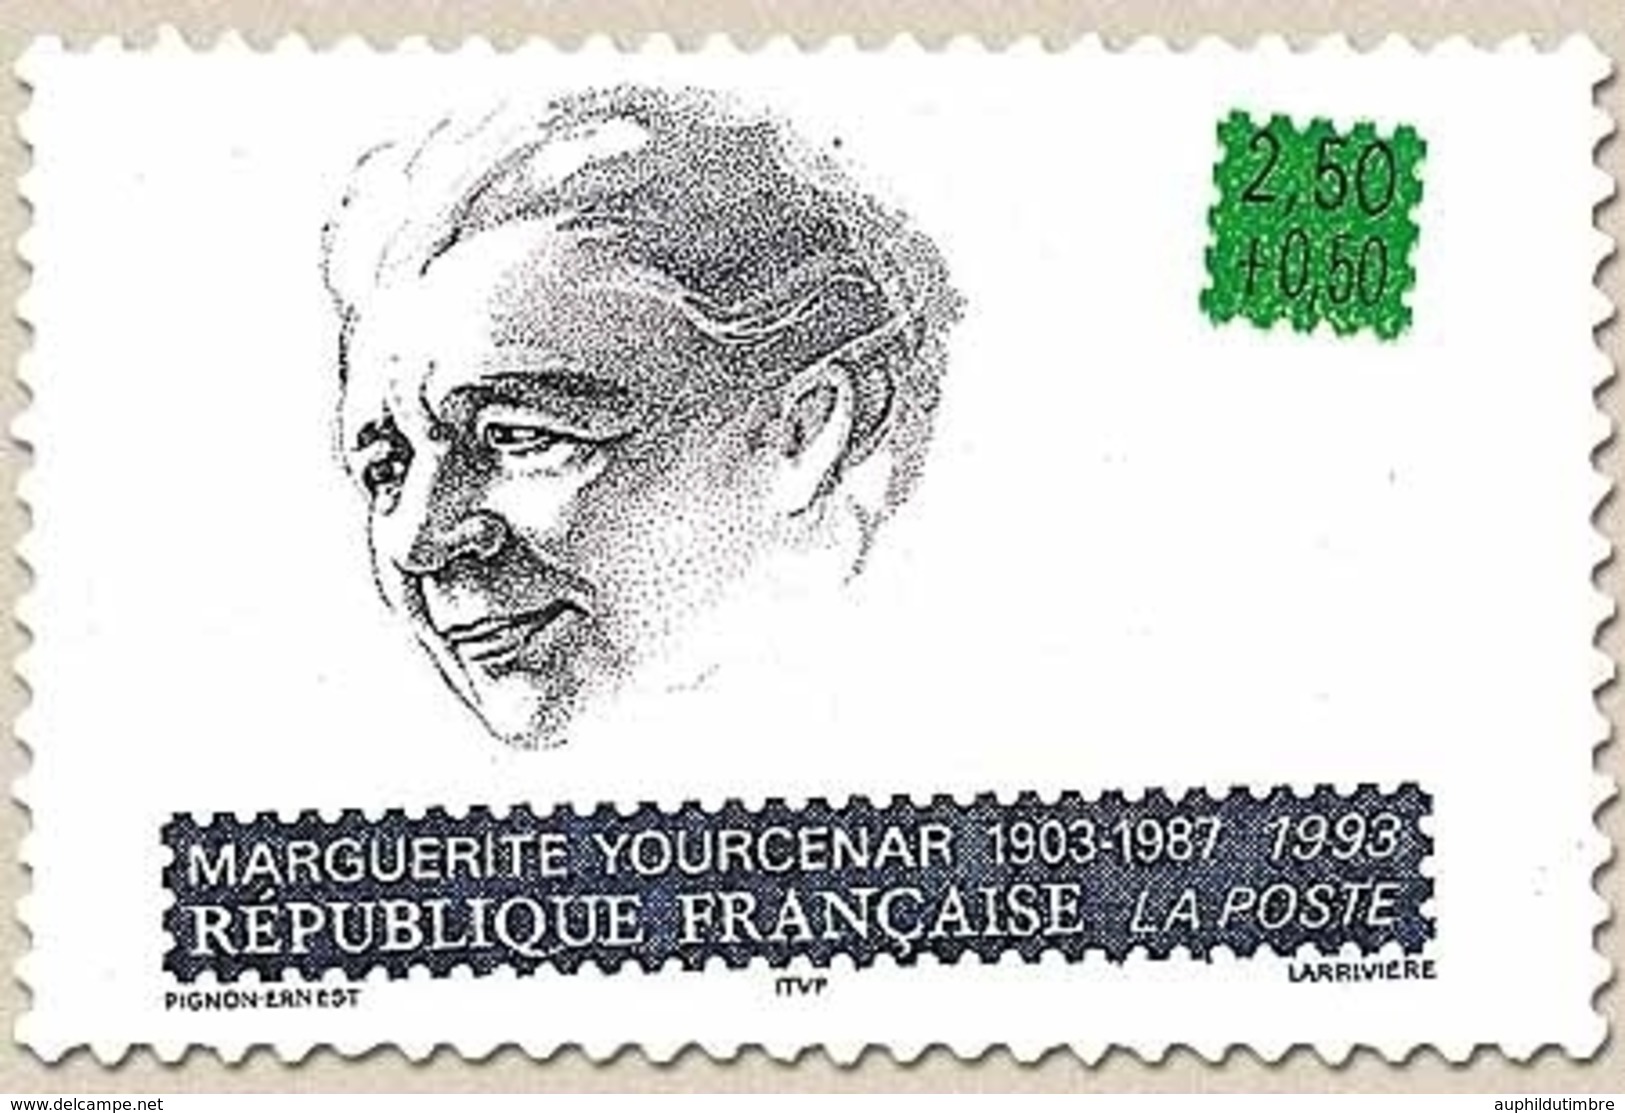 Personnages Célèbres. Ecrivains Français. Marguerite Yourcenar (1903-1987)  2f.50 + 50c. Bleu, Vert Et Noir Y2804 - Nuevos